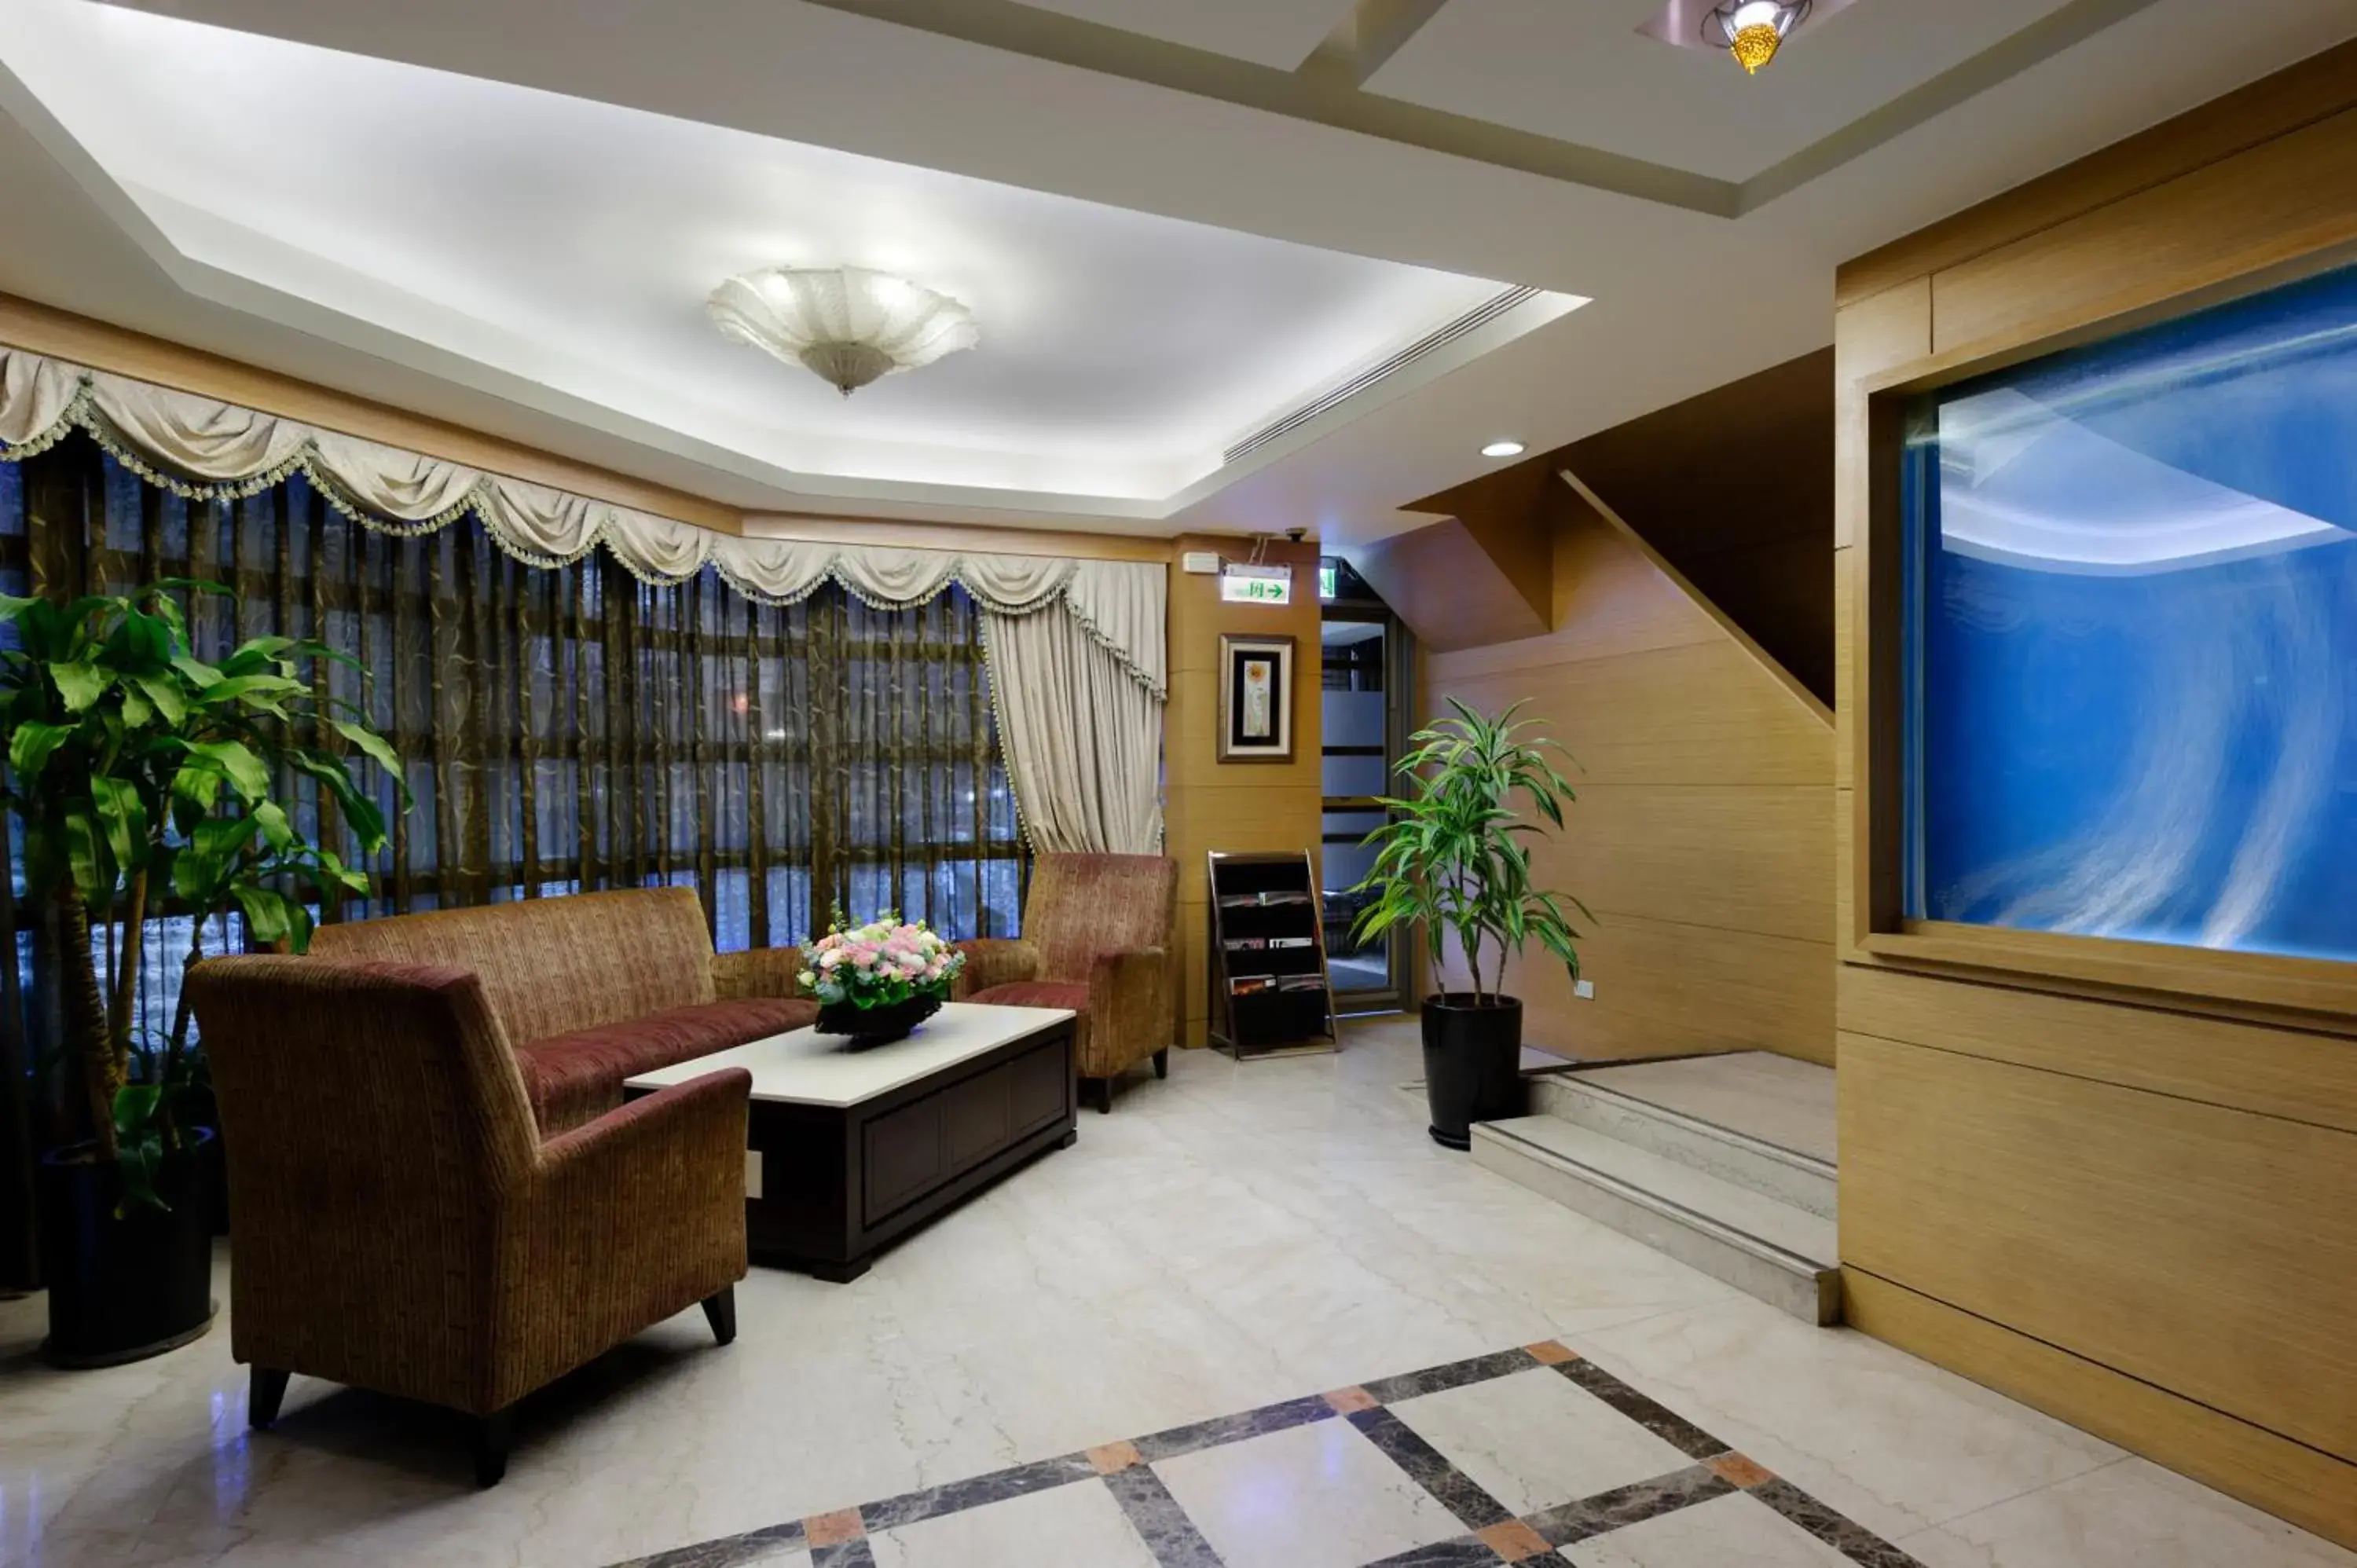 Lobby or reception, Lobby/Reception in Neijiang Hotel